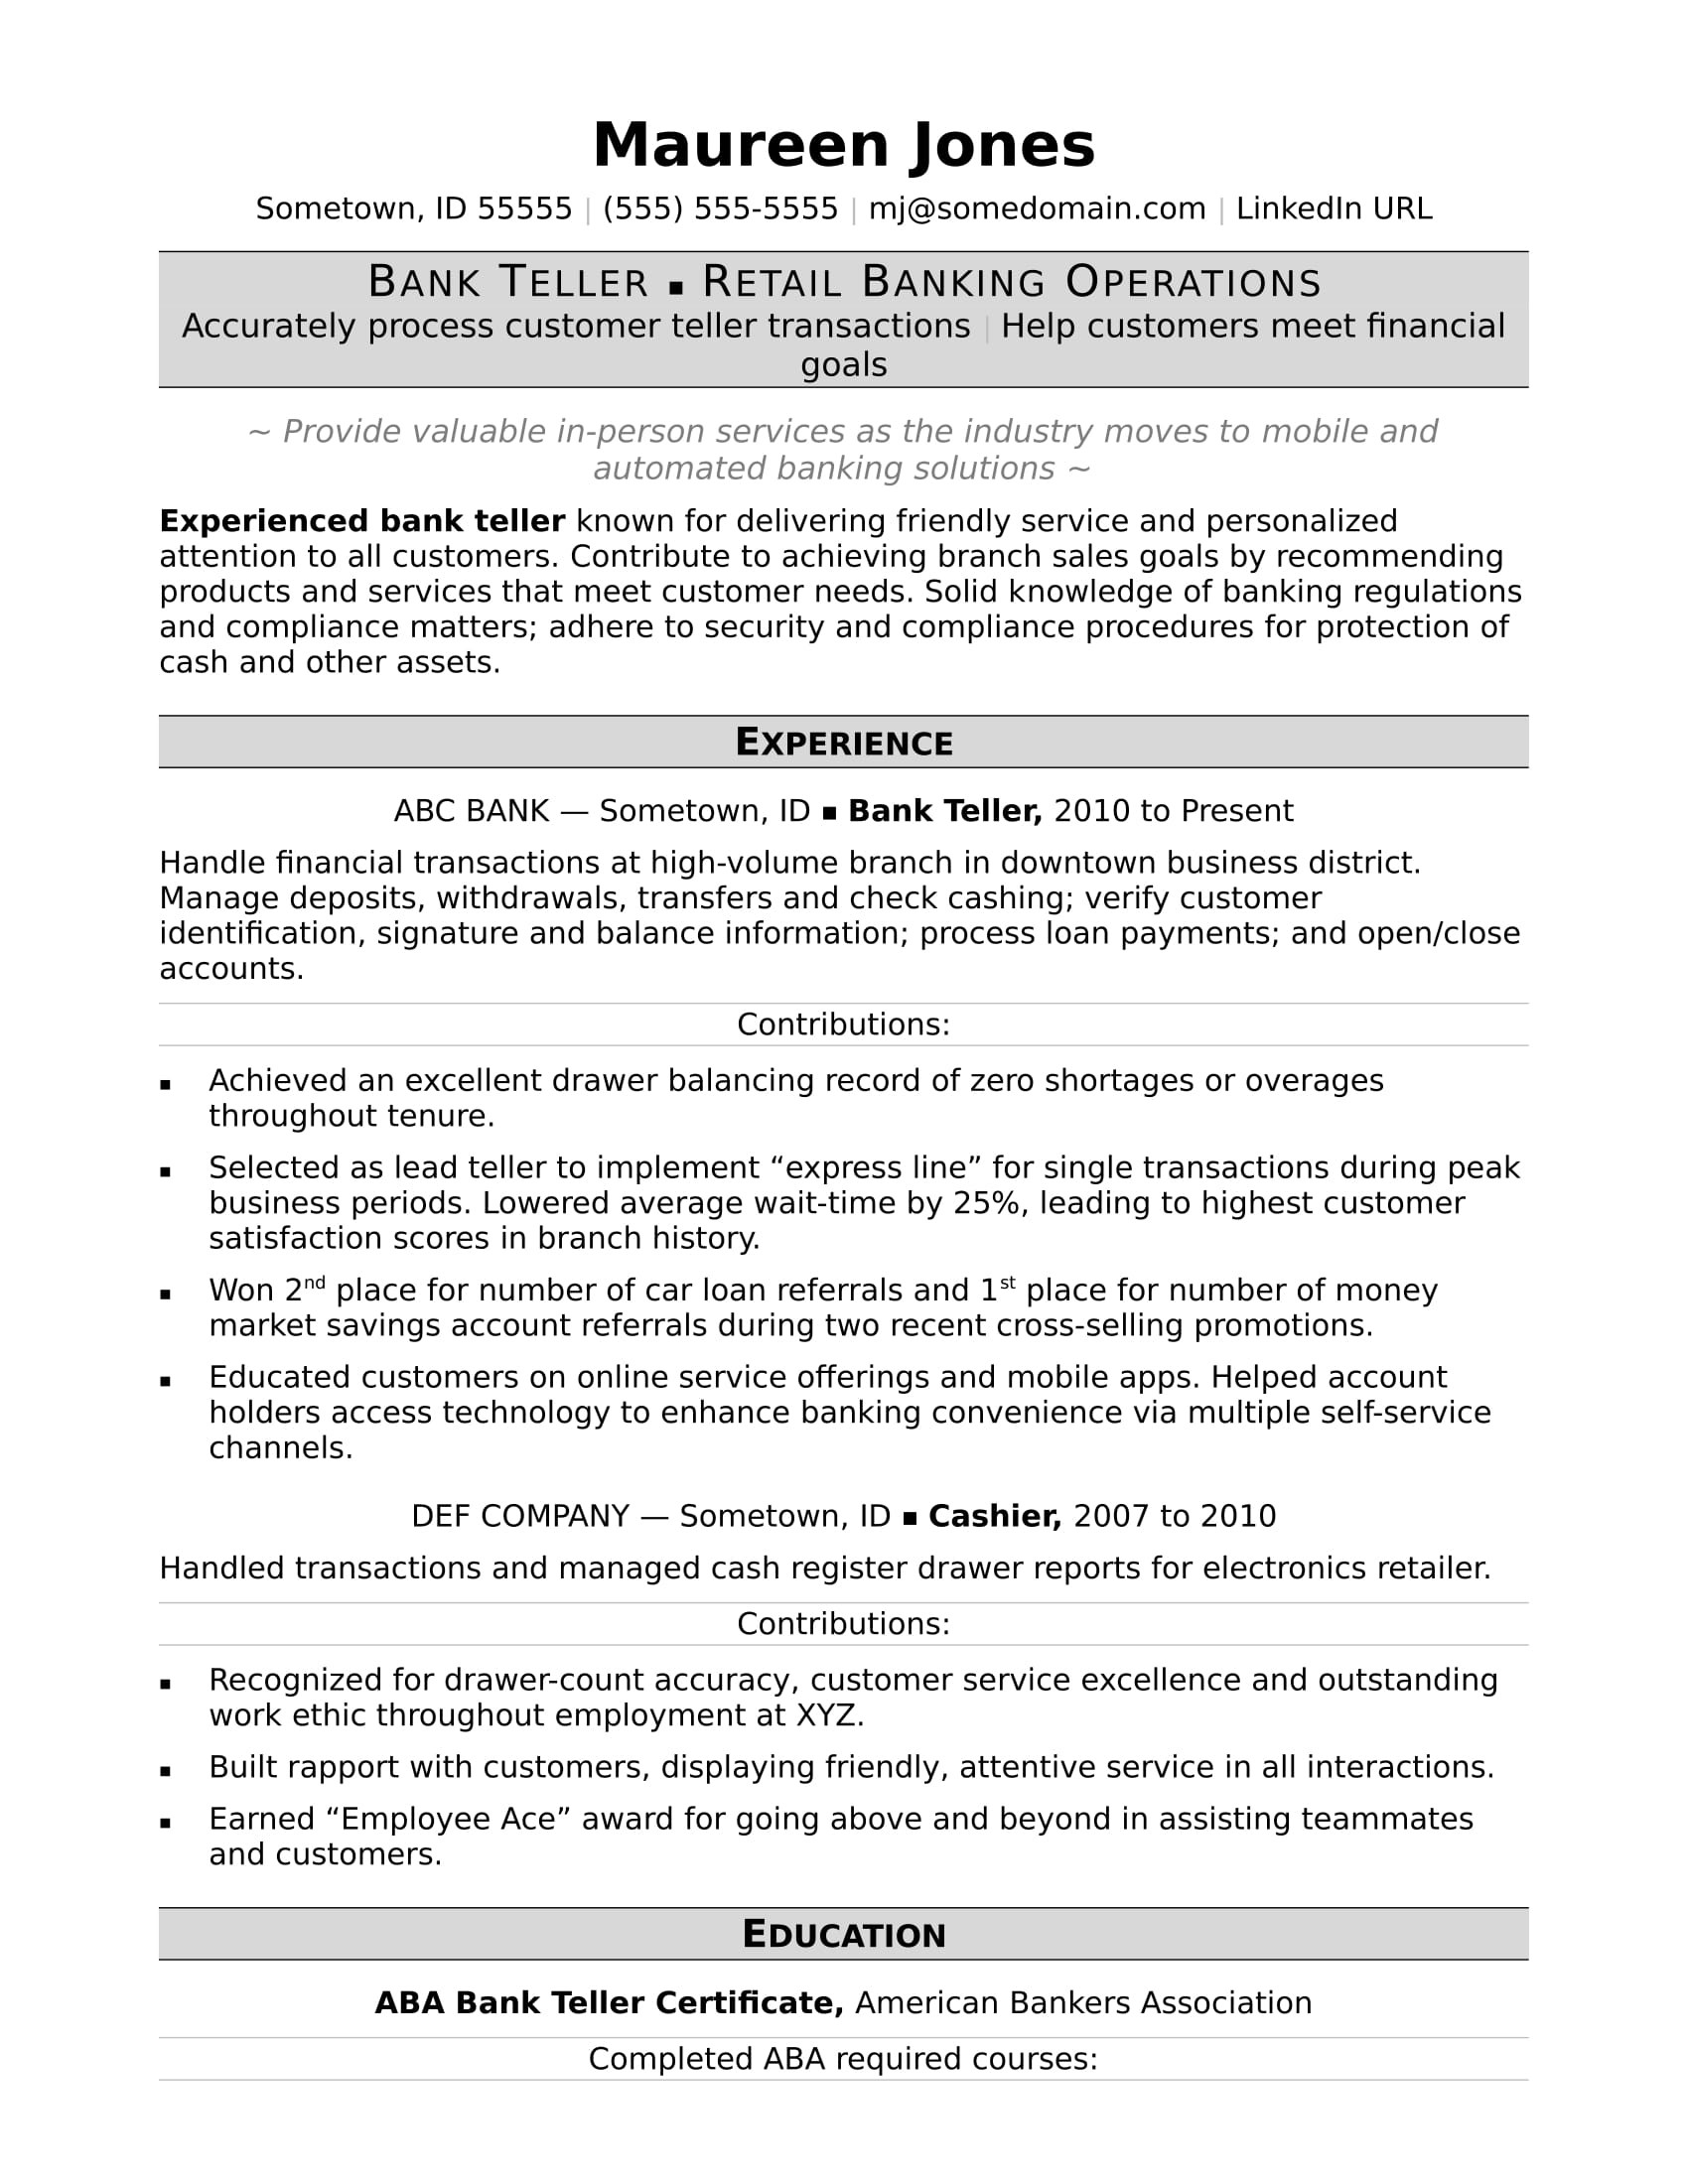 Sample Resume for Banking Job In Canada Bank Teller Resume Monster.com